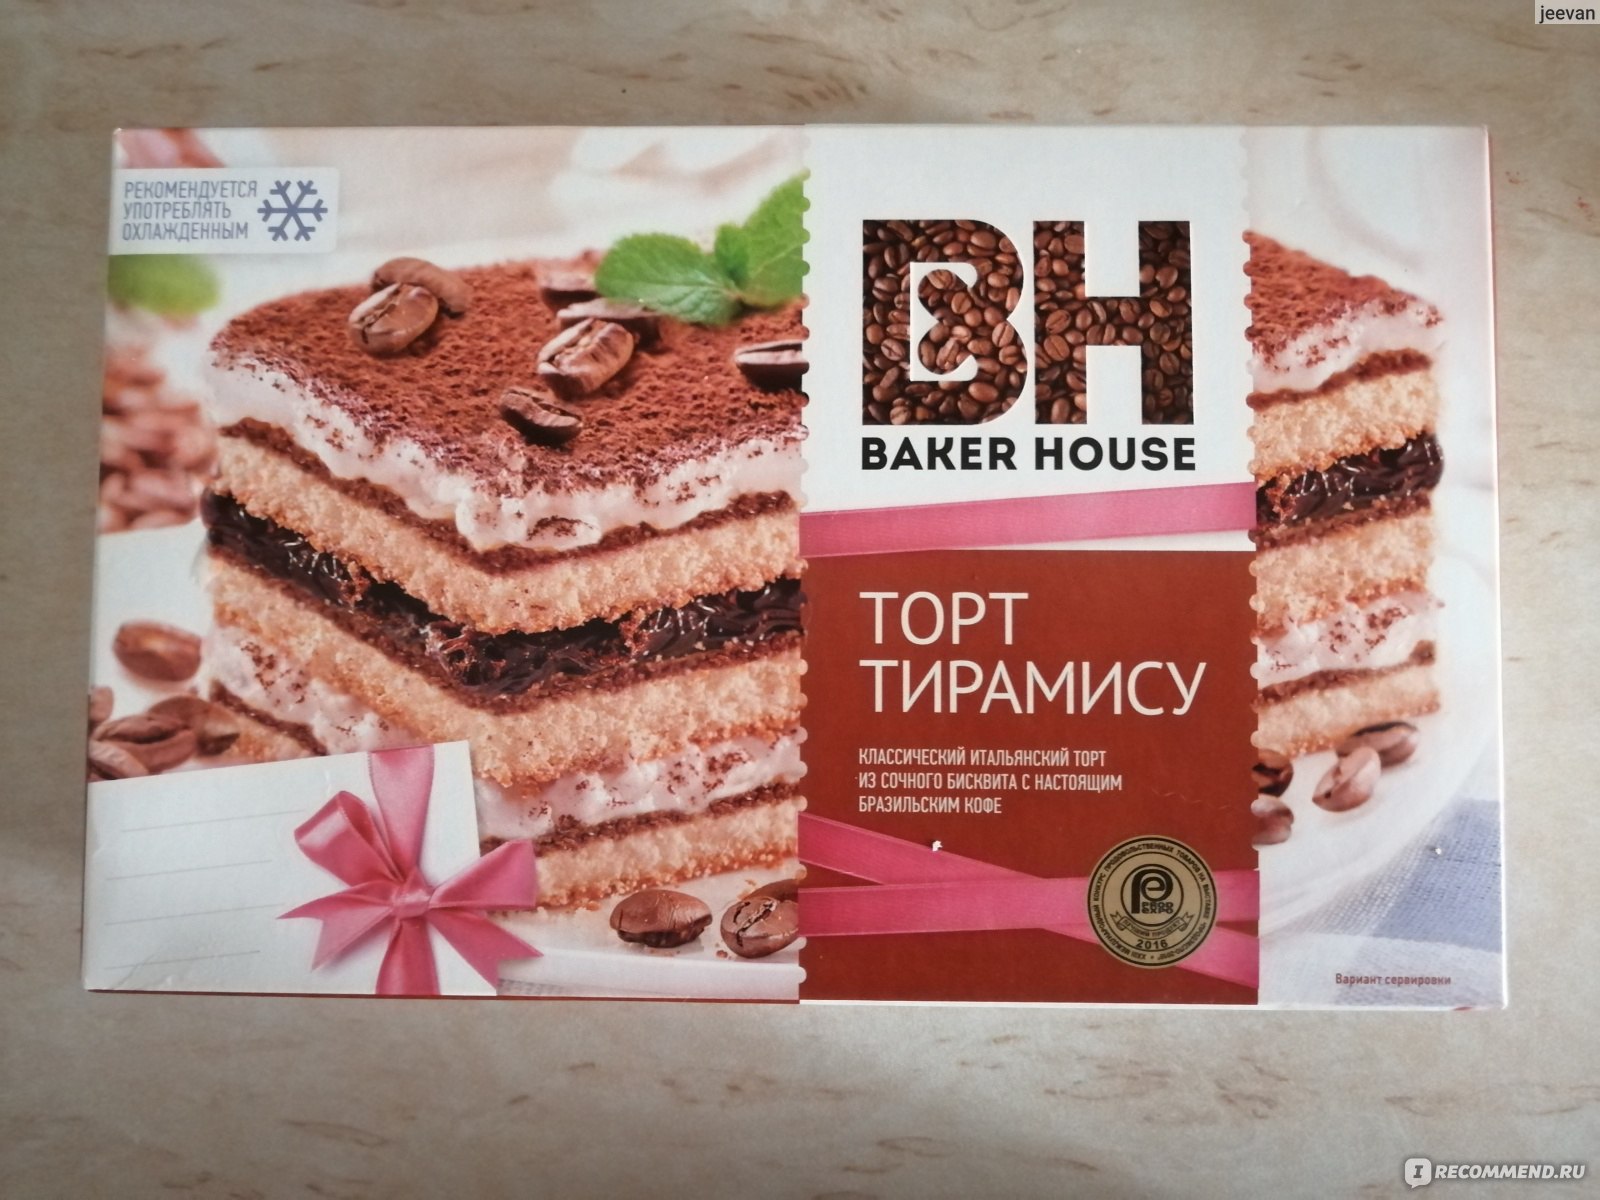 Категория: Разные продукты Бренд: Baker House Тип продукта: Торт.